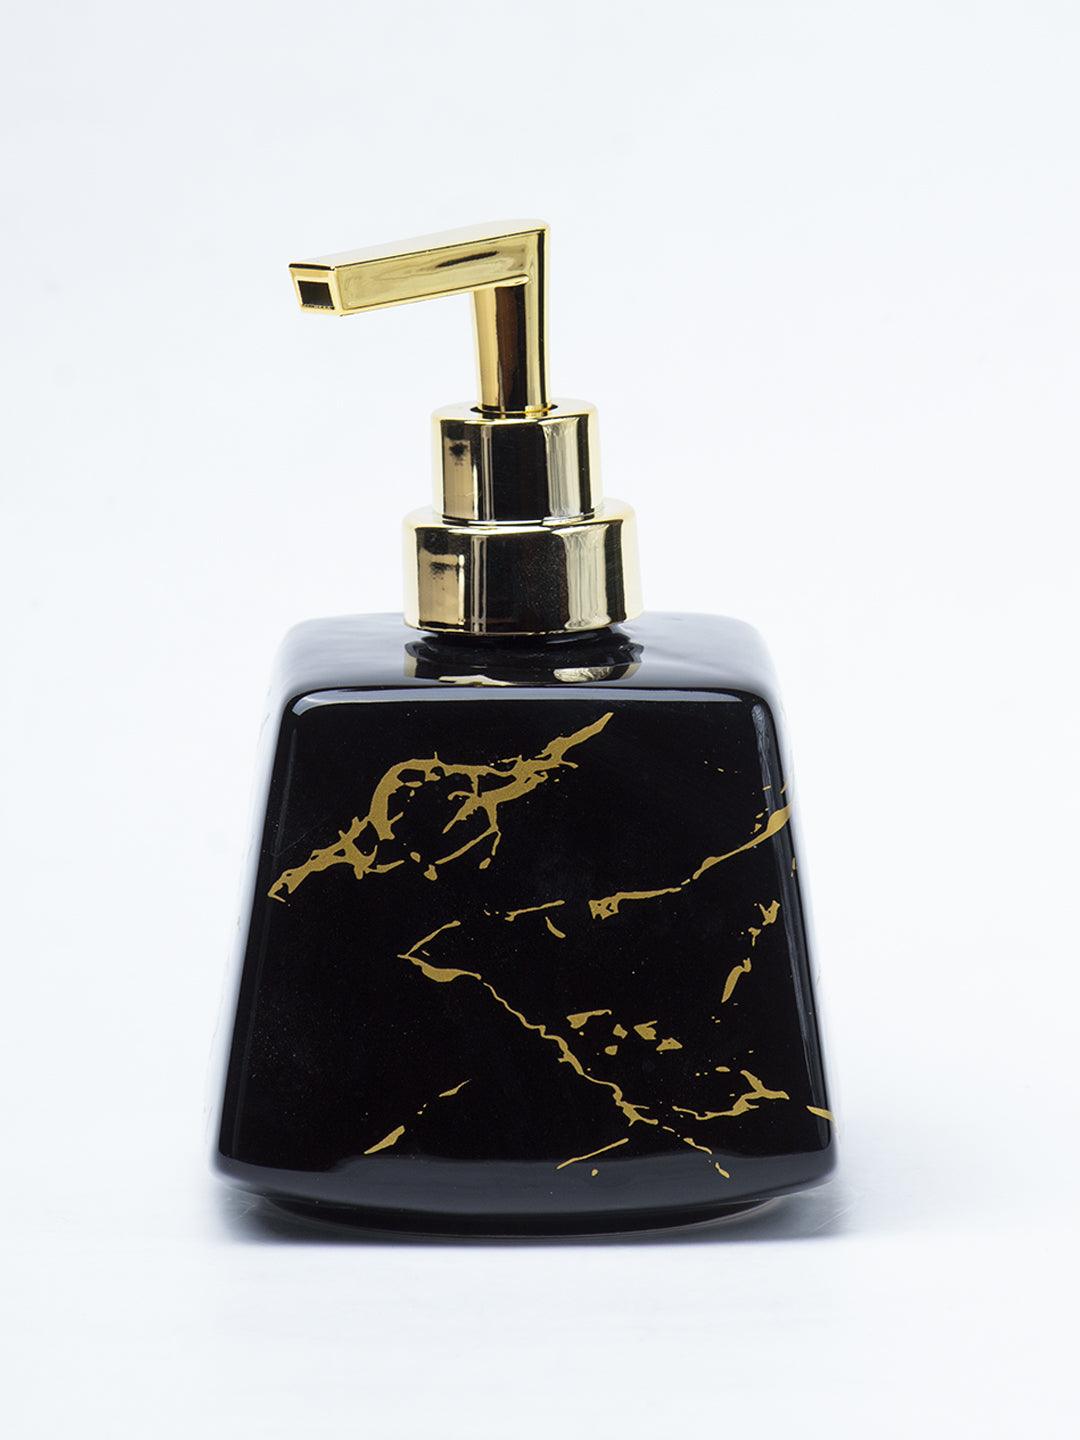 Black Ceramic Soap Dispenser - Stone Finish, Bath Accessories - 2